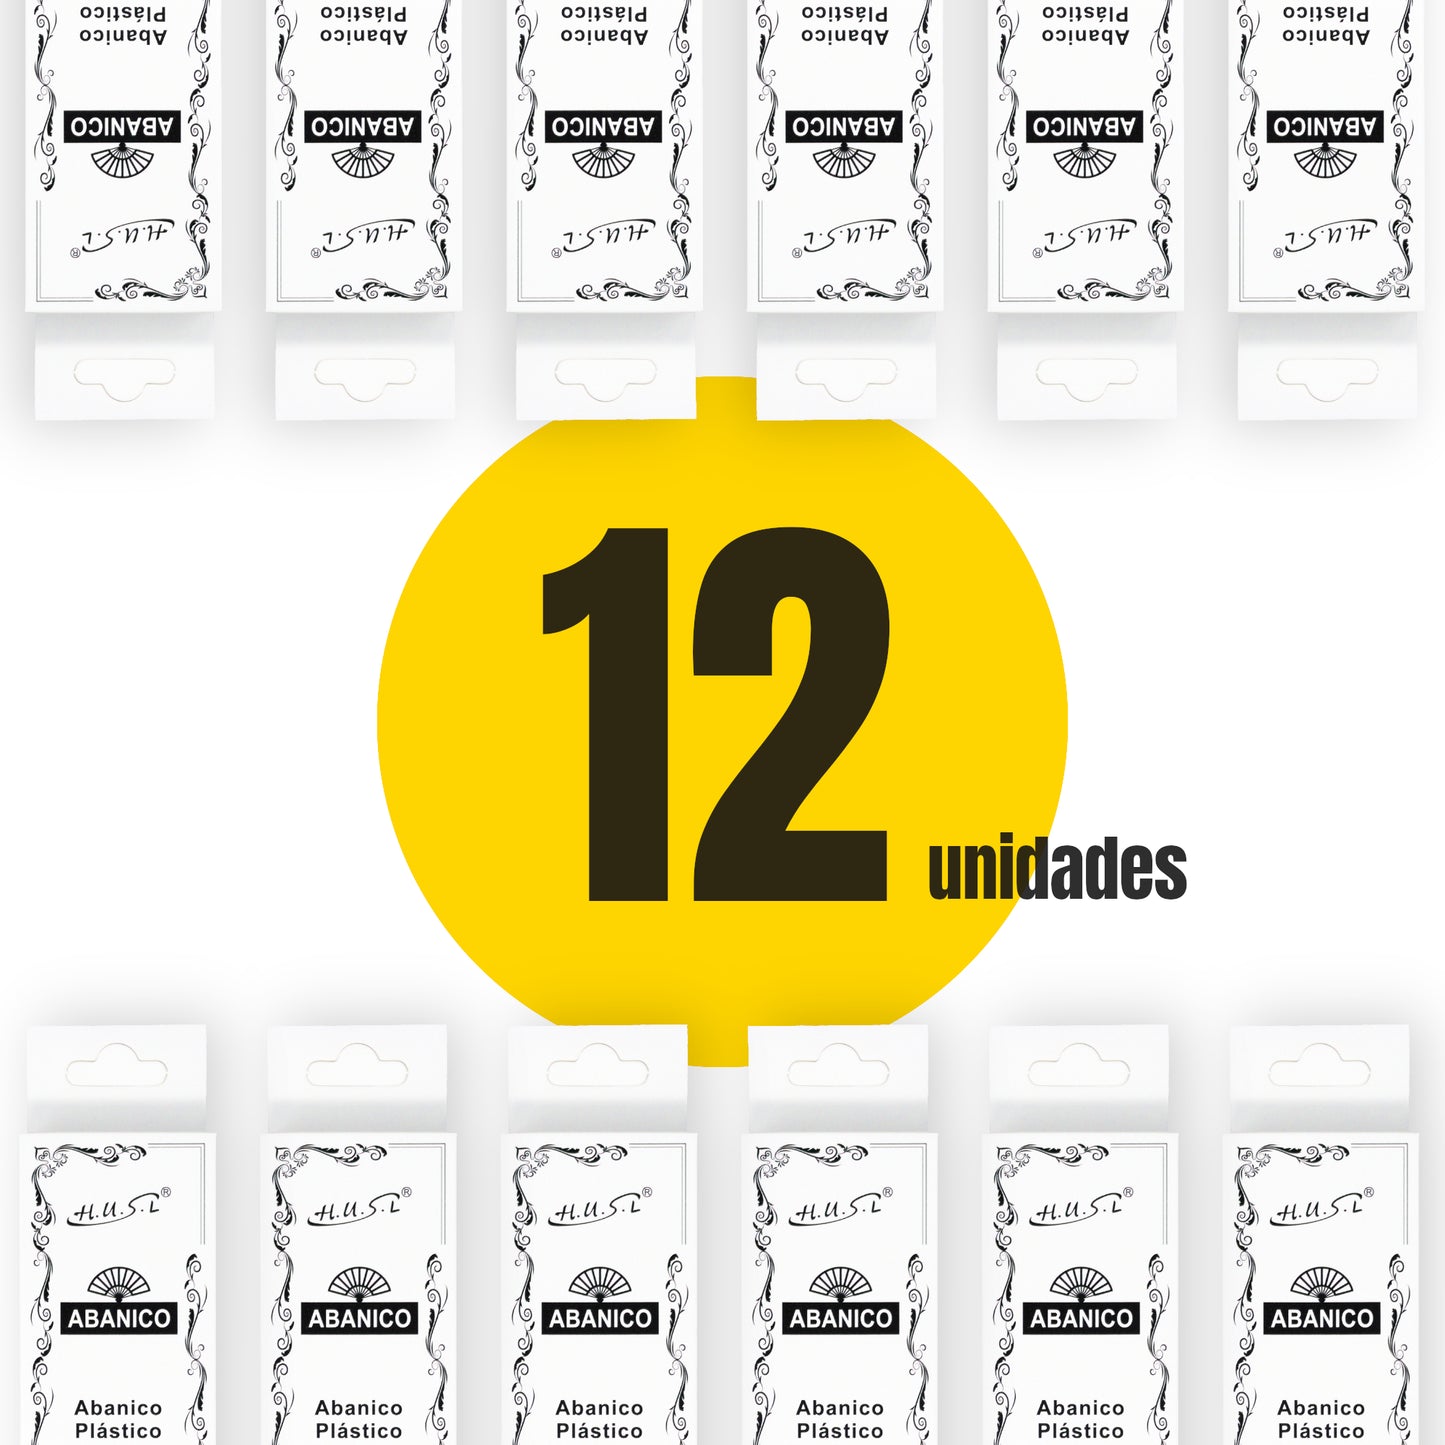 HOME UNIVERSAL Pack 12 Abanicos de Plástico con Empaquetado Individual para Regalar, Abanicos para Bodas, Comuniones, Fiestas y Eventos (Naranja)